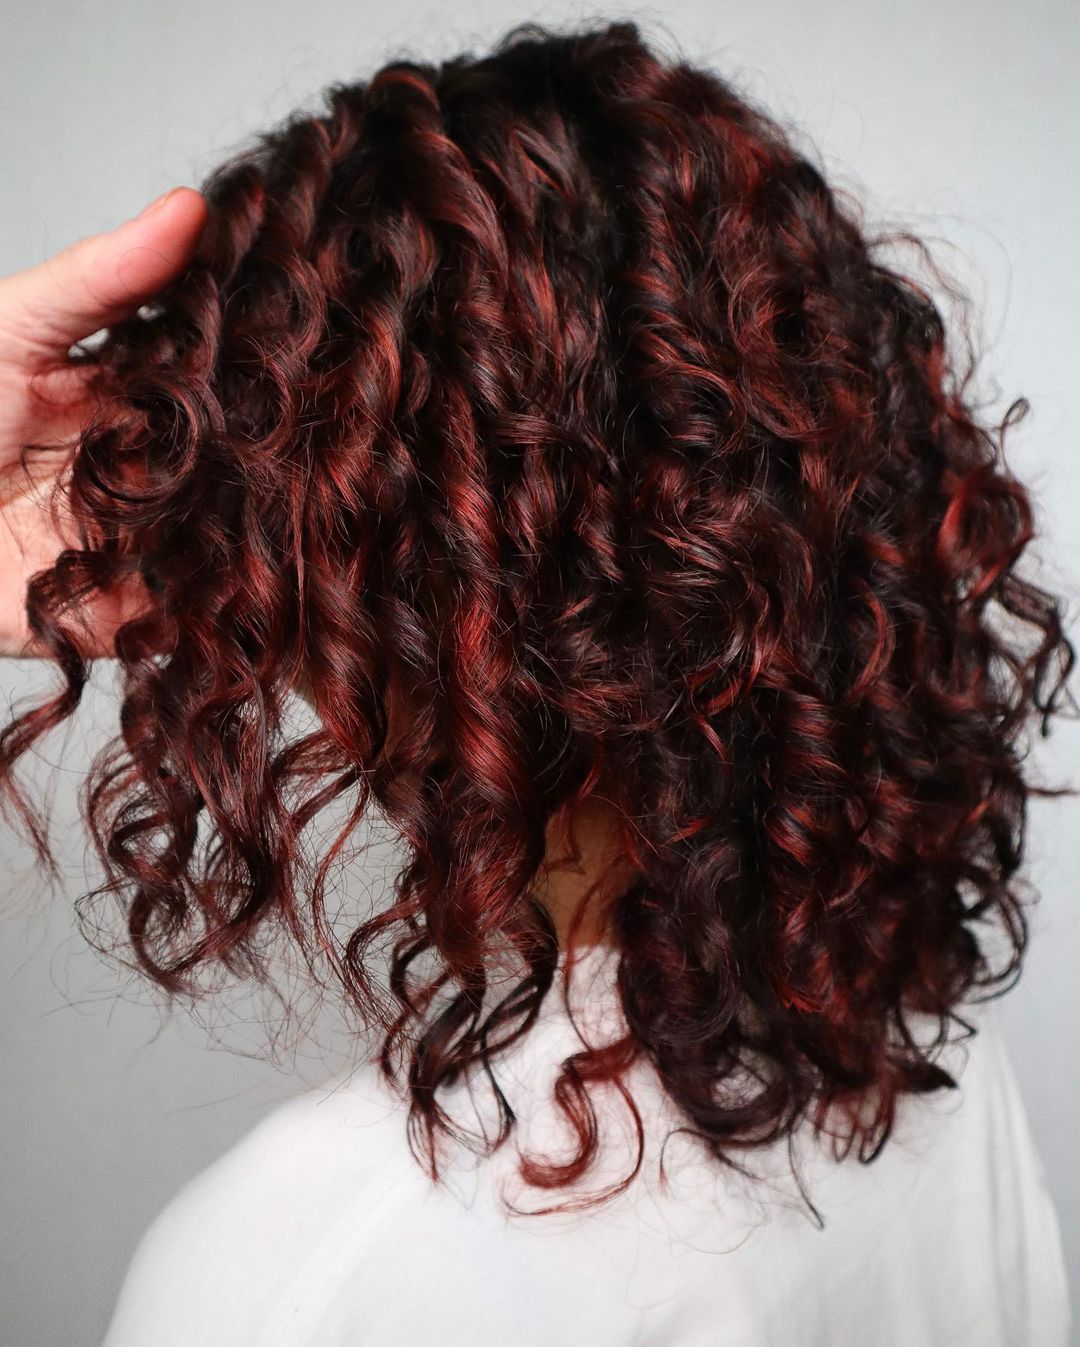 cabelo encaracolado na altura dos ombros com madeixas vermelhas mostrado por trás